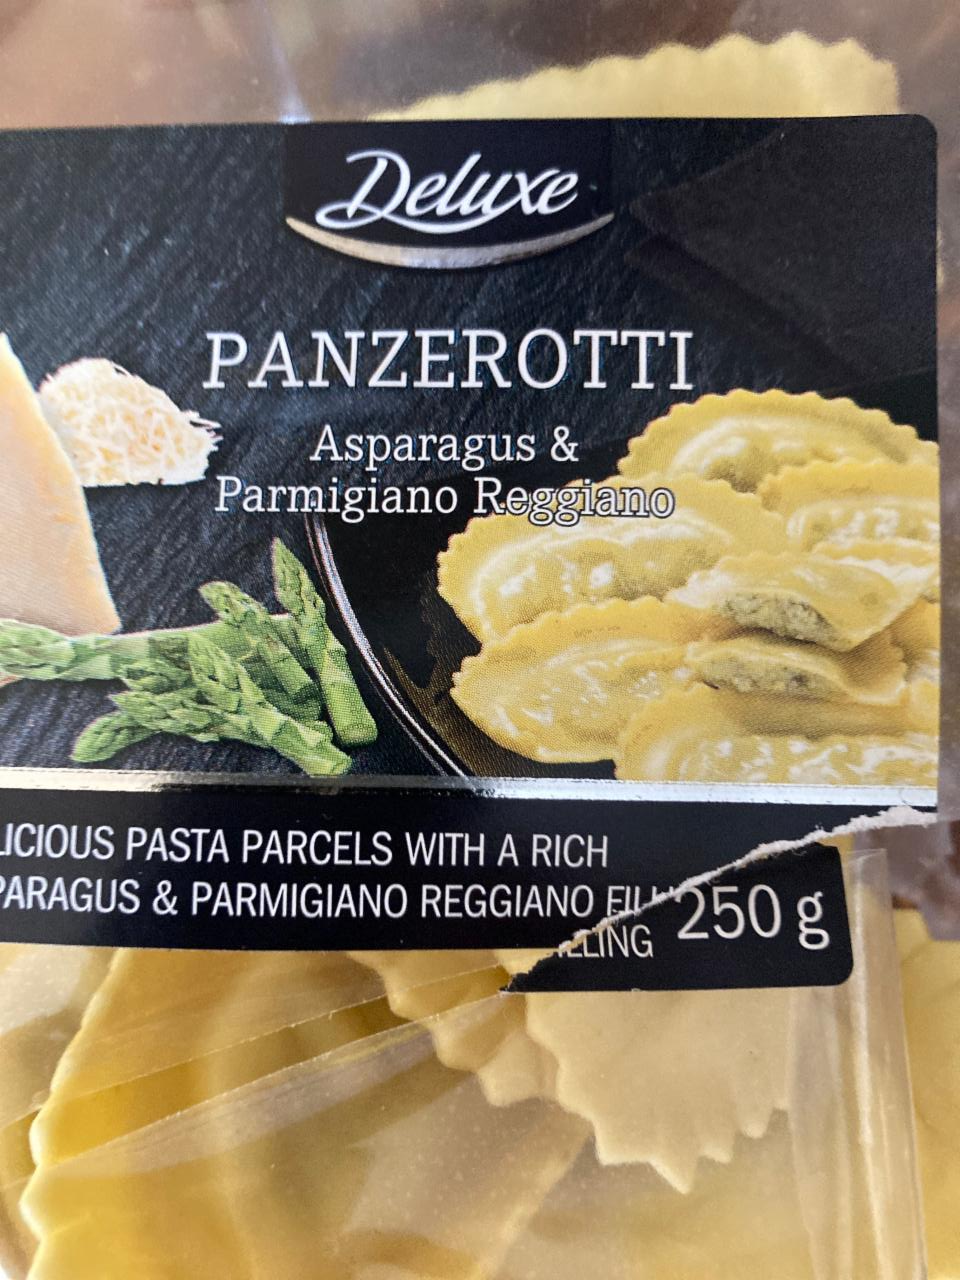 Zdjęcia - panzerotti asparagus&parmigiano reggiano Deluxe